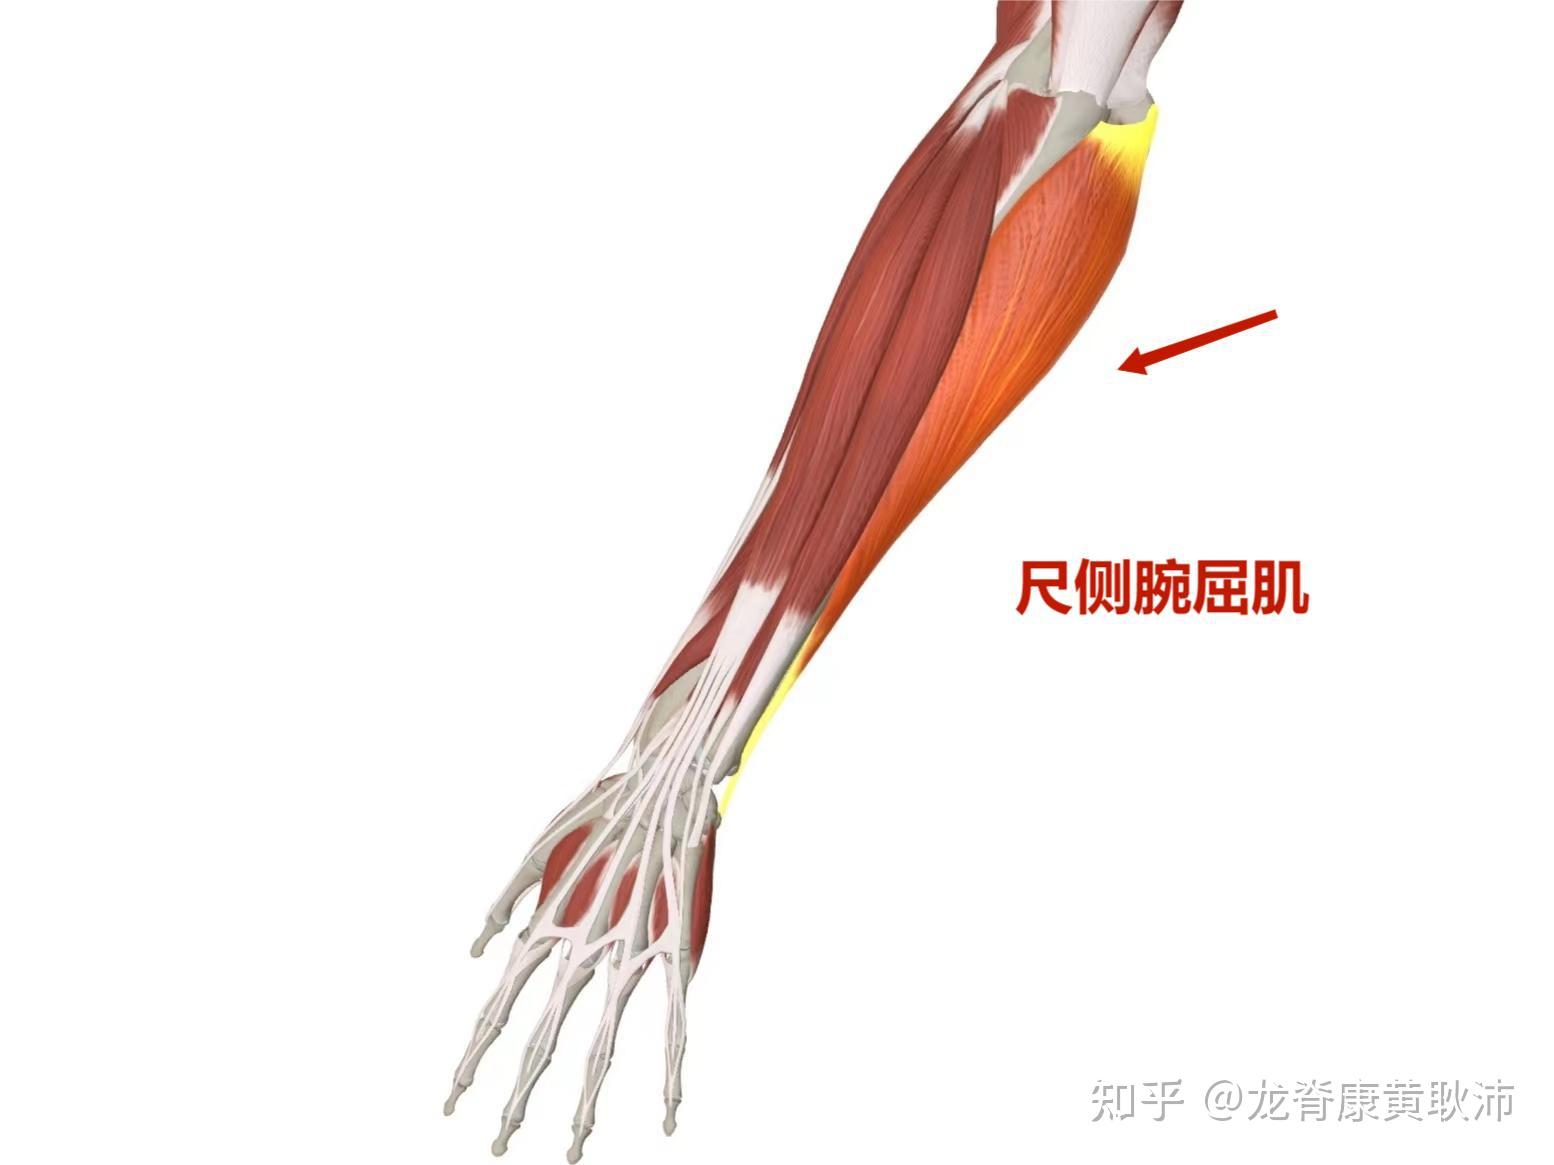 尺桡骨肌肉图片